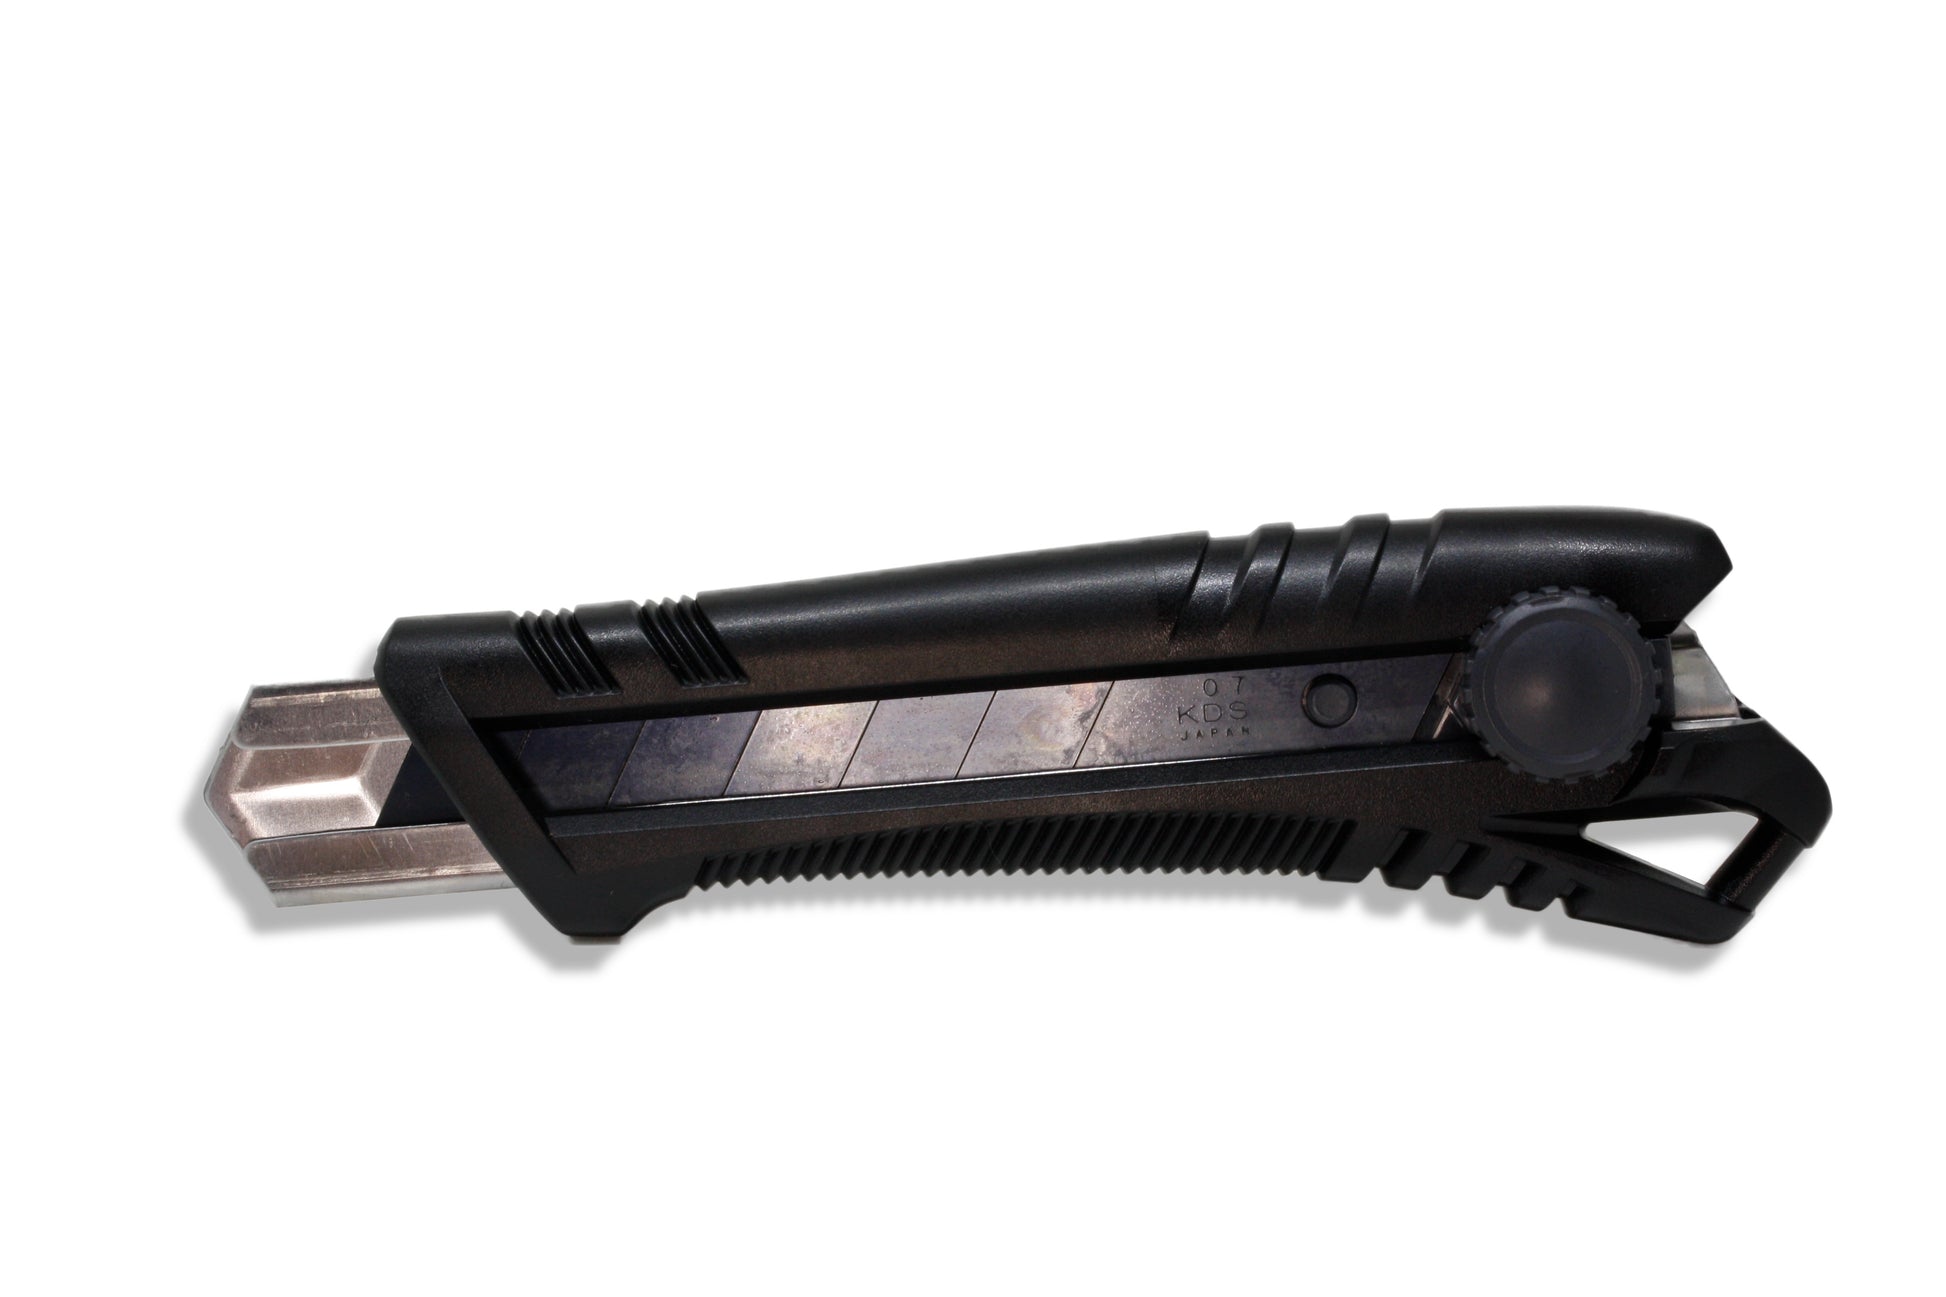 Tradegear Online's KDS 25mm Heavy Duty Knife  - Twist Lock 